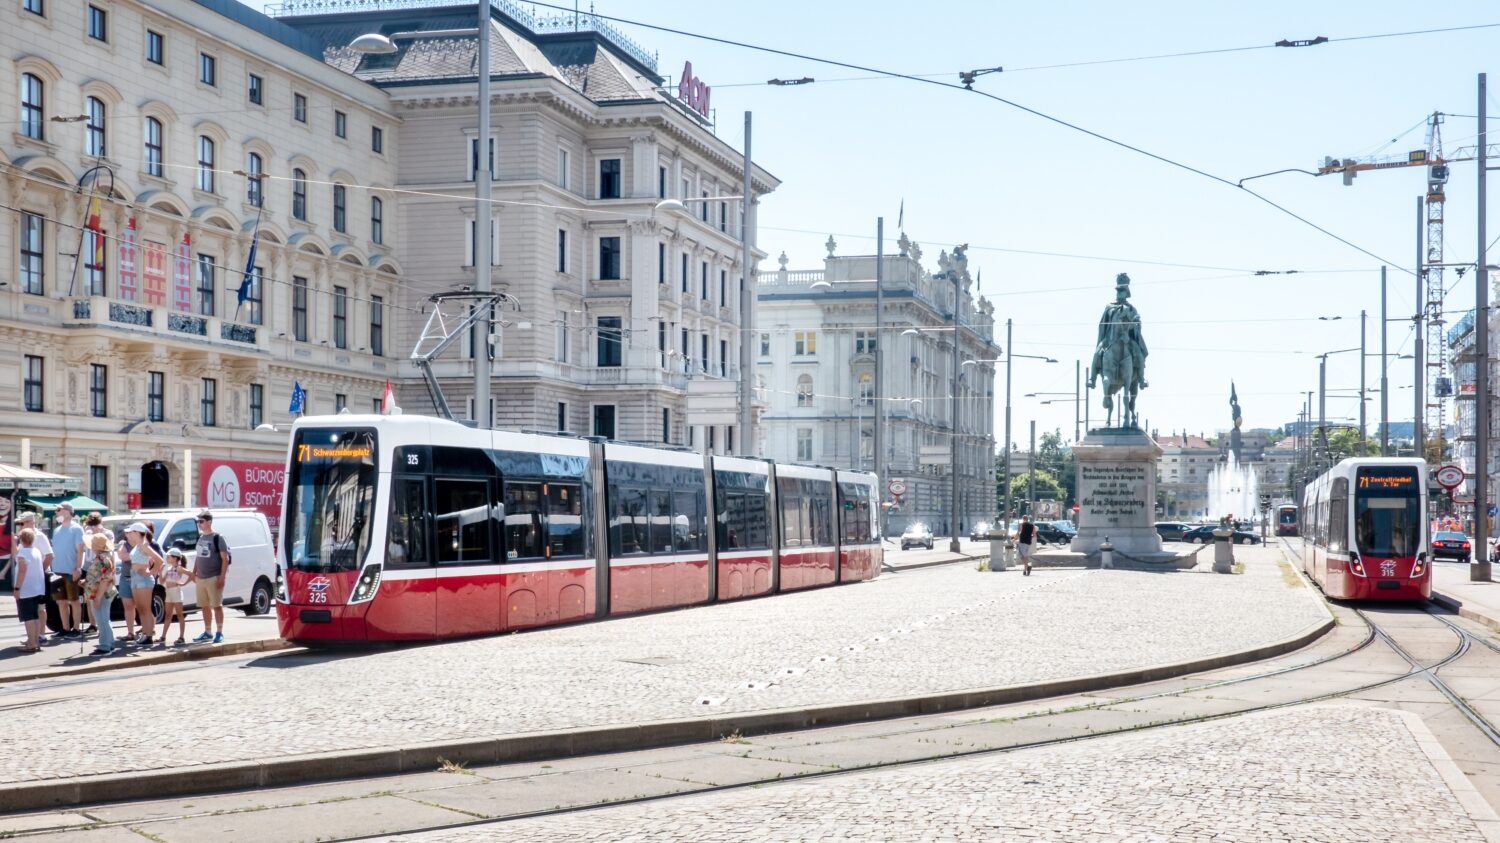 Tramvaje Flexity Wien z produkce Alstomu dříve Bombardieru) na Schwarzenbergplatzu dne 5. 8. 2022. (foto: Manfred Helmer; Winer Linien)